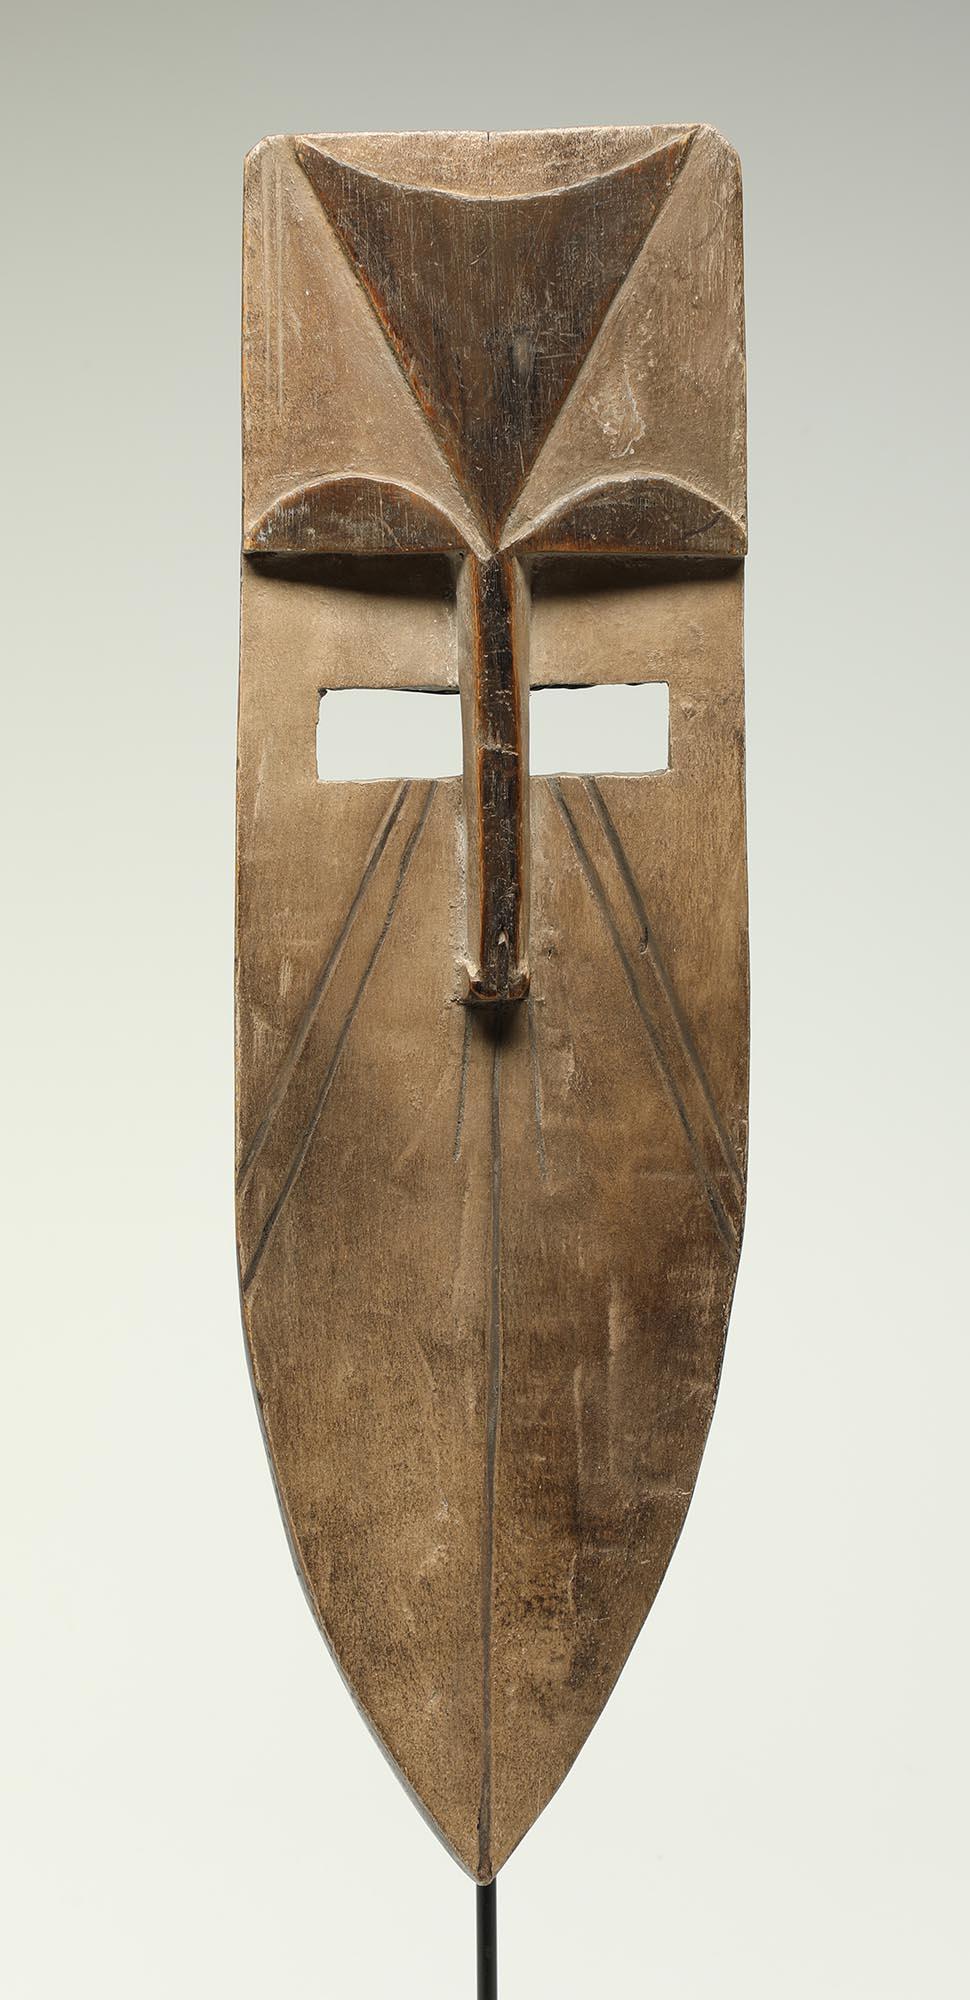 Frühe, fein geschnitzte afrikanische Afikpo-Maske mit stilisiertem, geometrischem, langem Gesicht.
Aus Nigeria in der Nähe des Cross River.
Aus einer alten Sammlung im Südwesten.
Gesamtmaße 15 x 4 1/2 x 1 3/4 Zoll. Inklusive Metall- und Holzständer